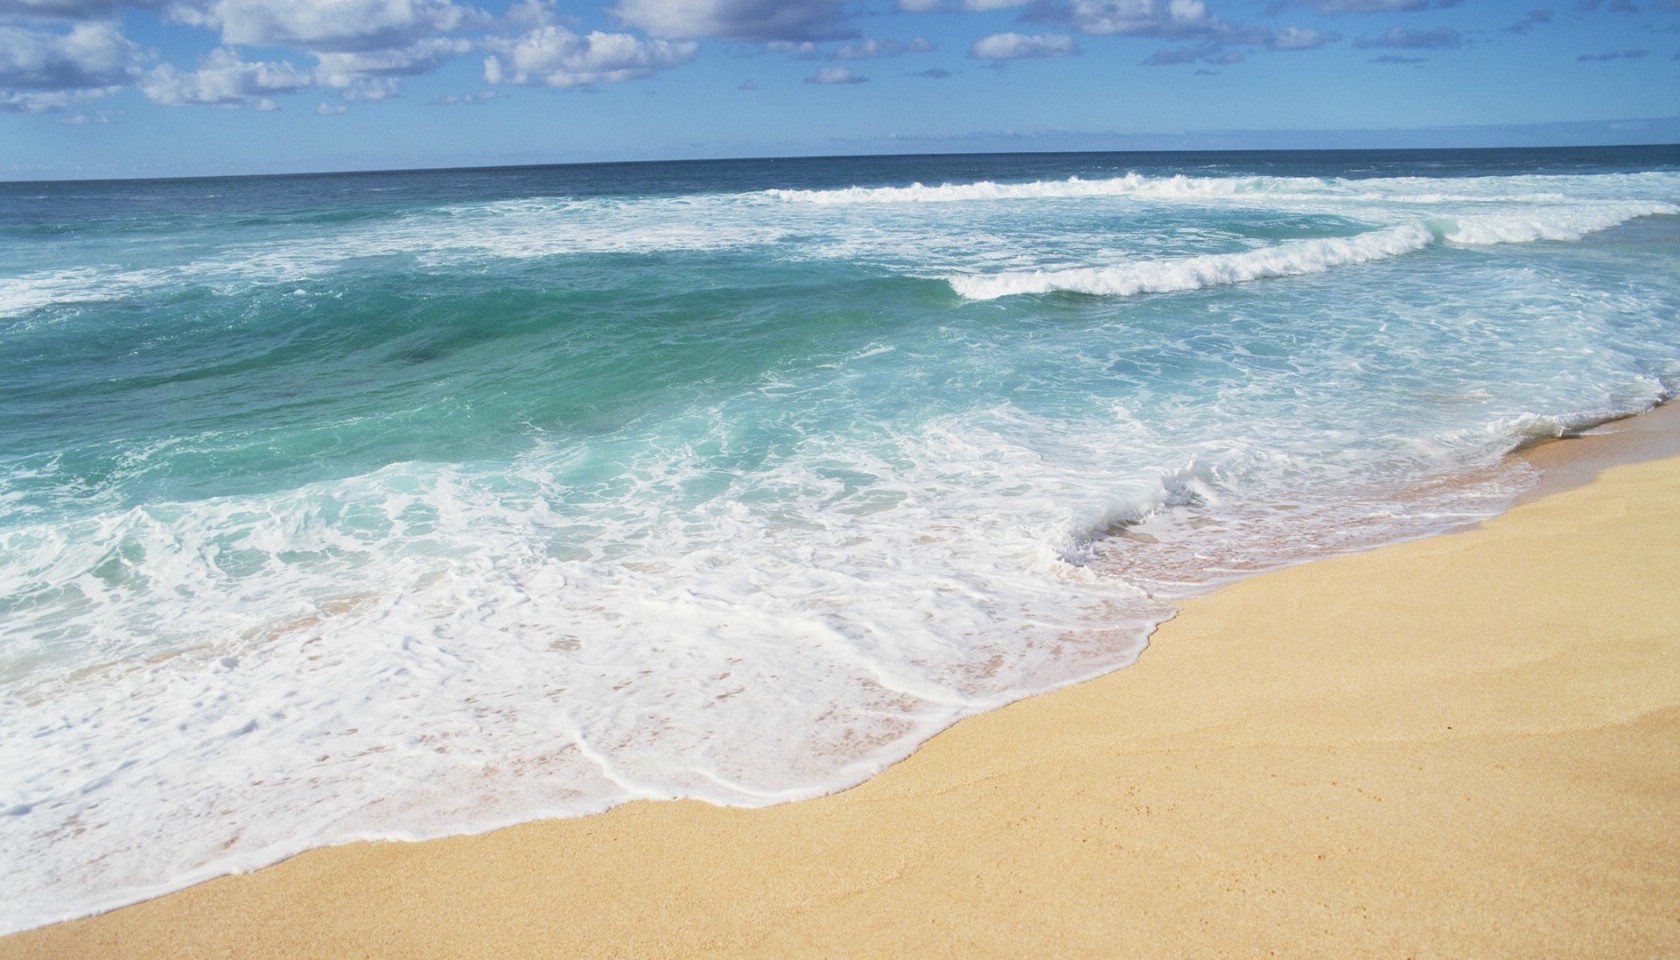 夏威夷海滩图片 清澈海水波浪壁纸,夏威夷浪漫海滩壁纸图片-风景壁纸